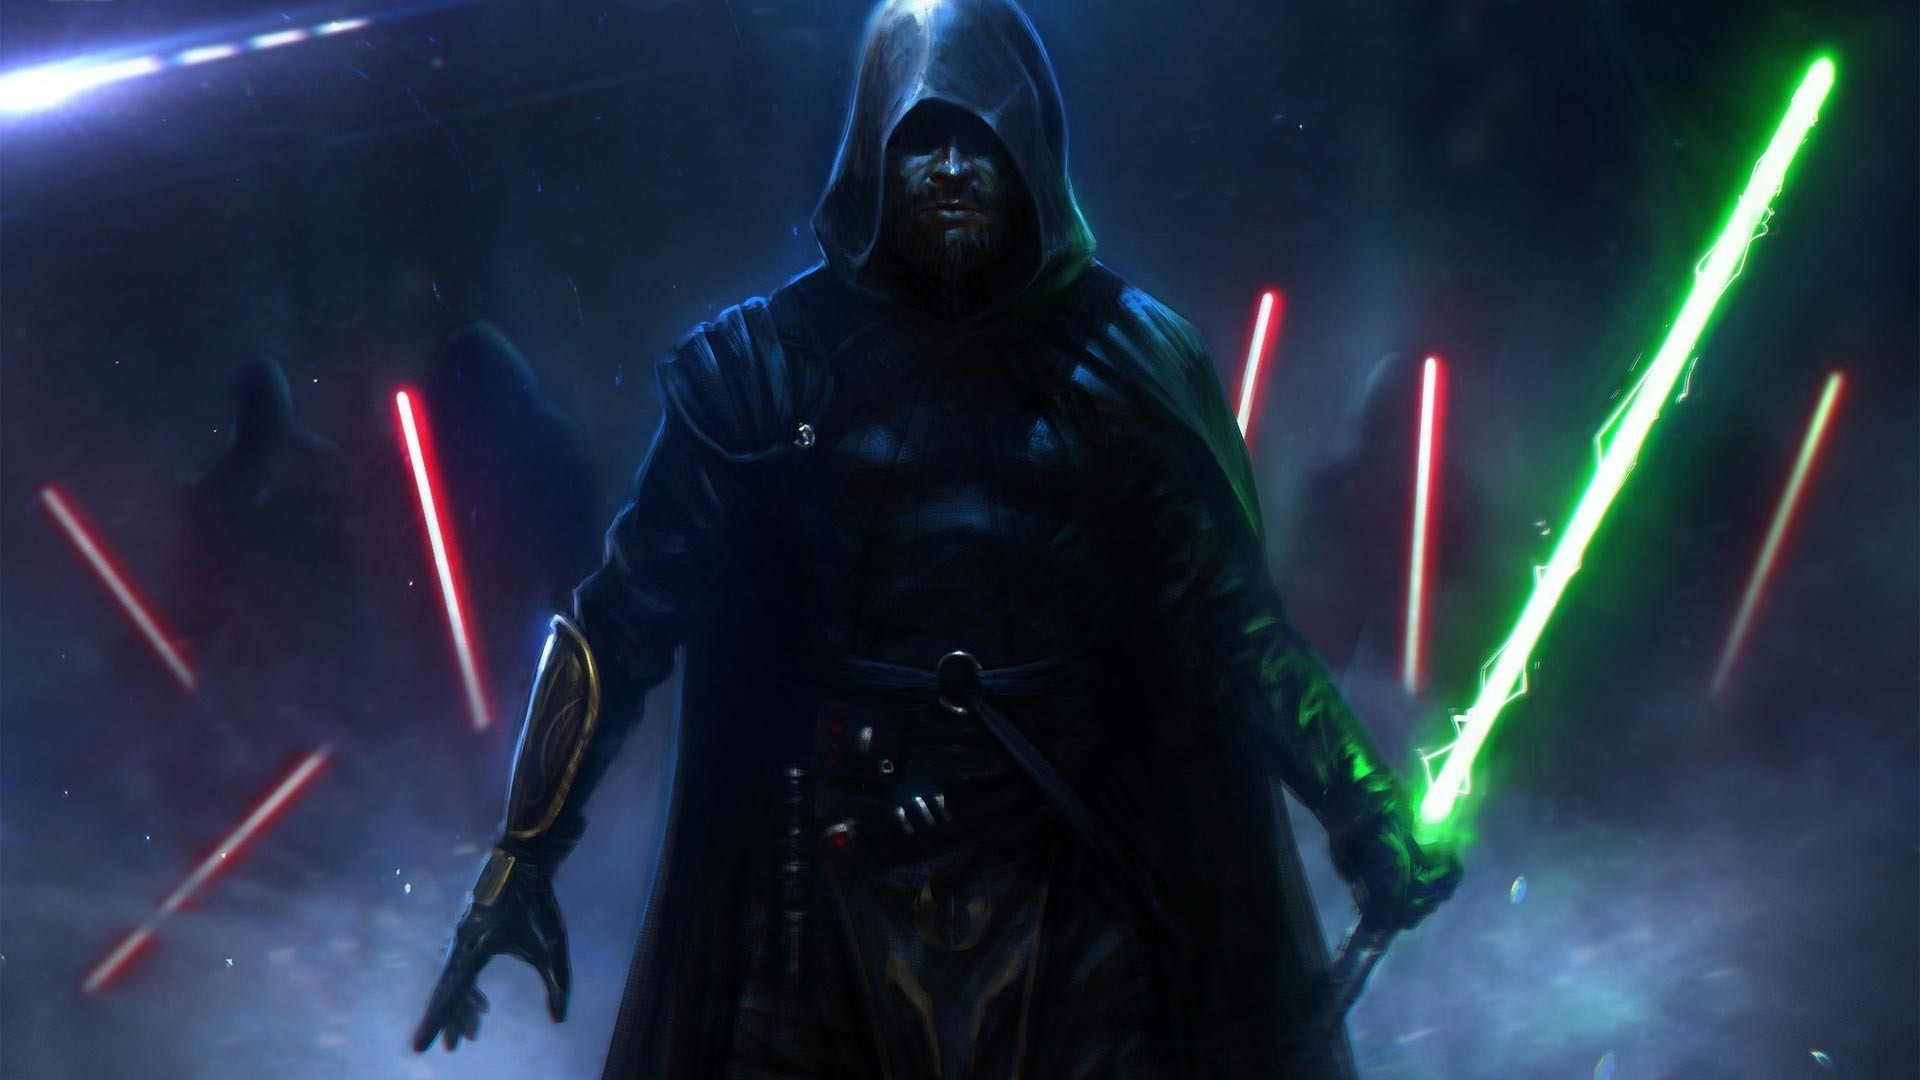 ขอพลังจงสถิตอยู่กับท่าน! Star Wars Jedi: Fallen Order เตรียมเผยตัวอย่างแรก 13 เม.ย.นี้